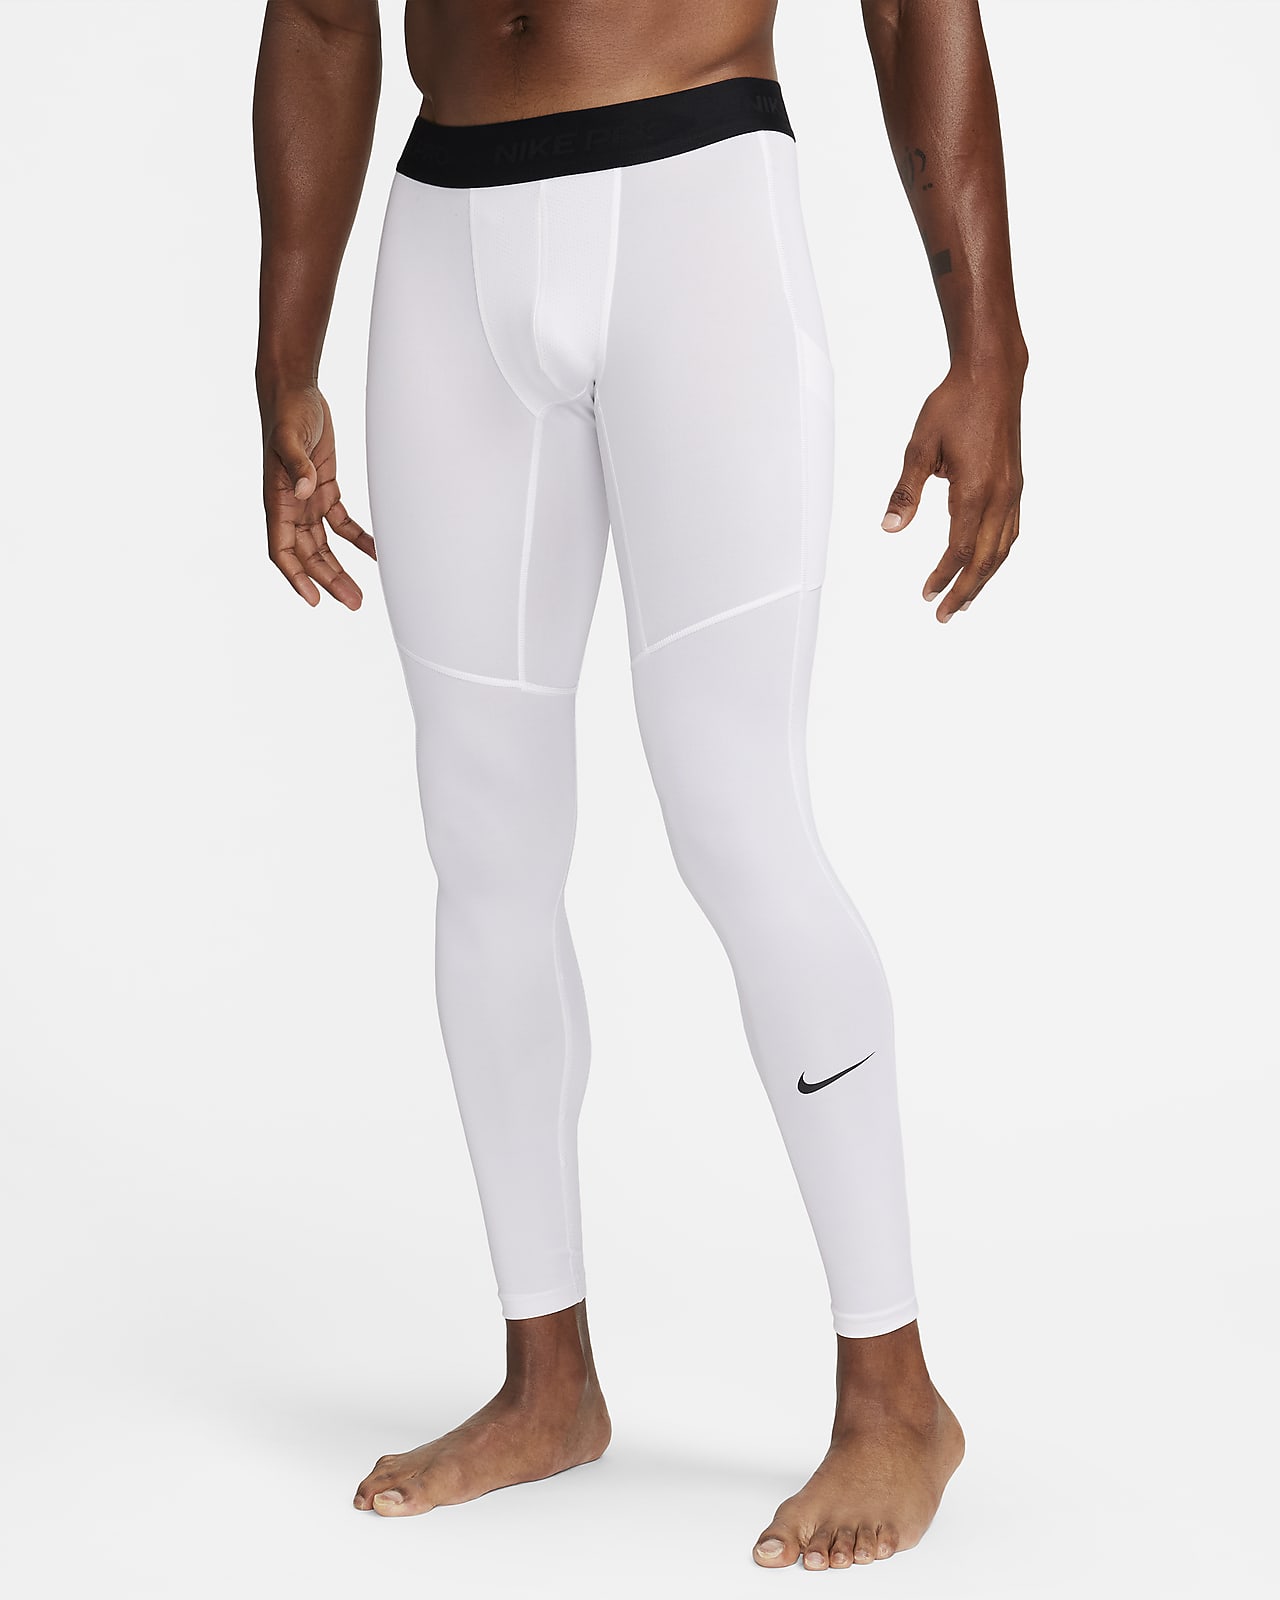 Nike Pro Men's Black Tight Shorts Skins Black